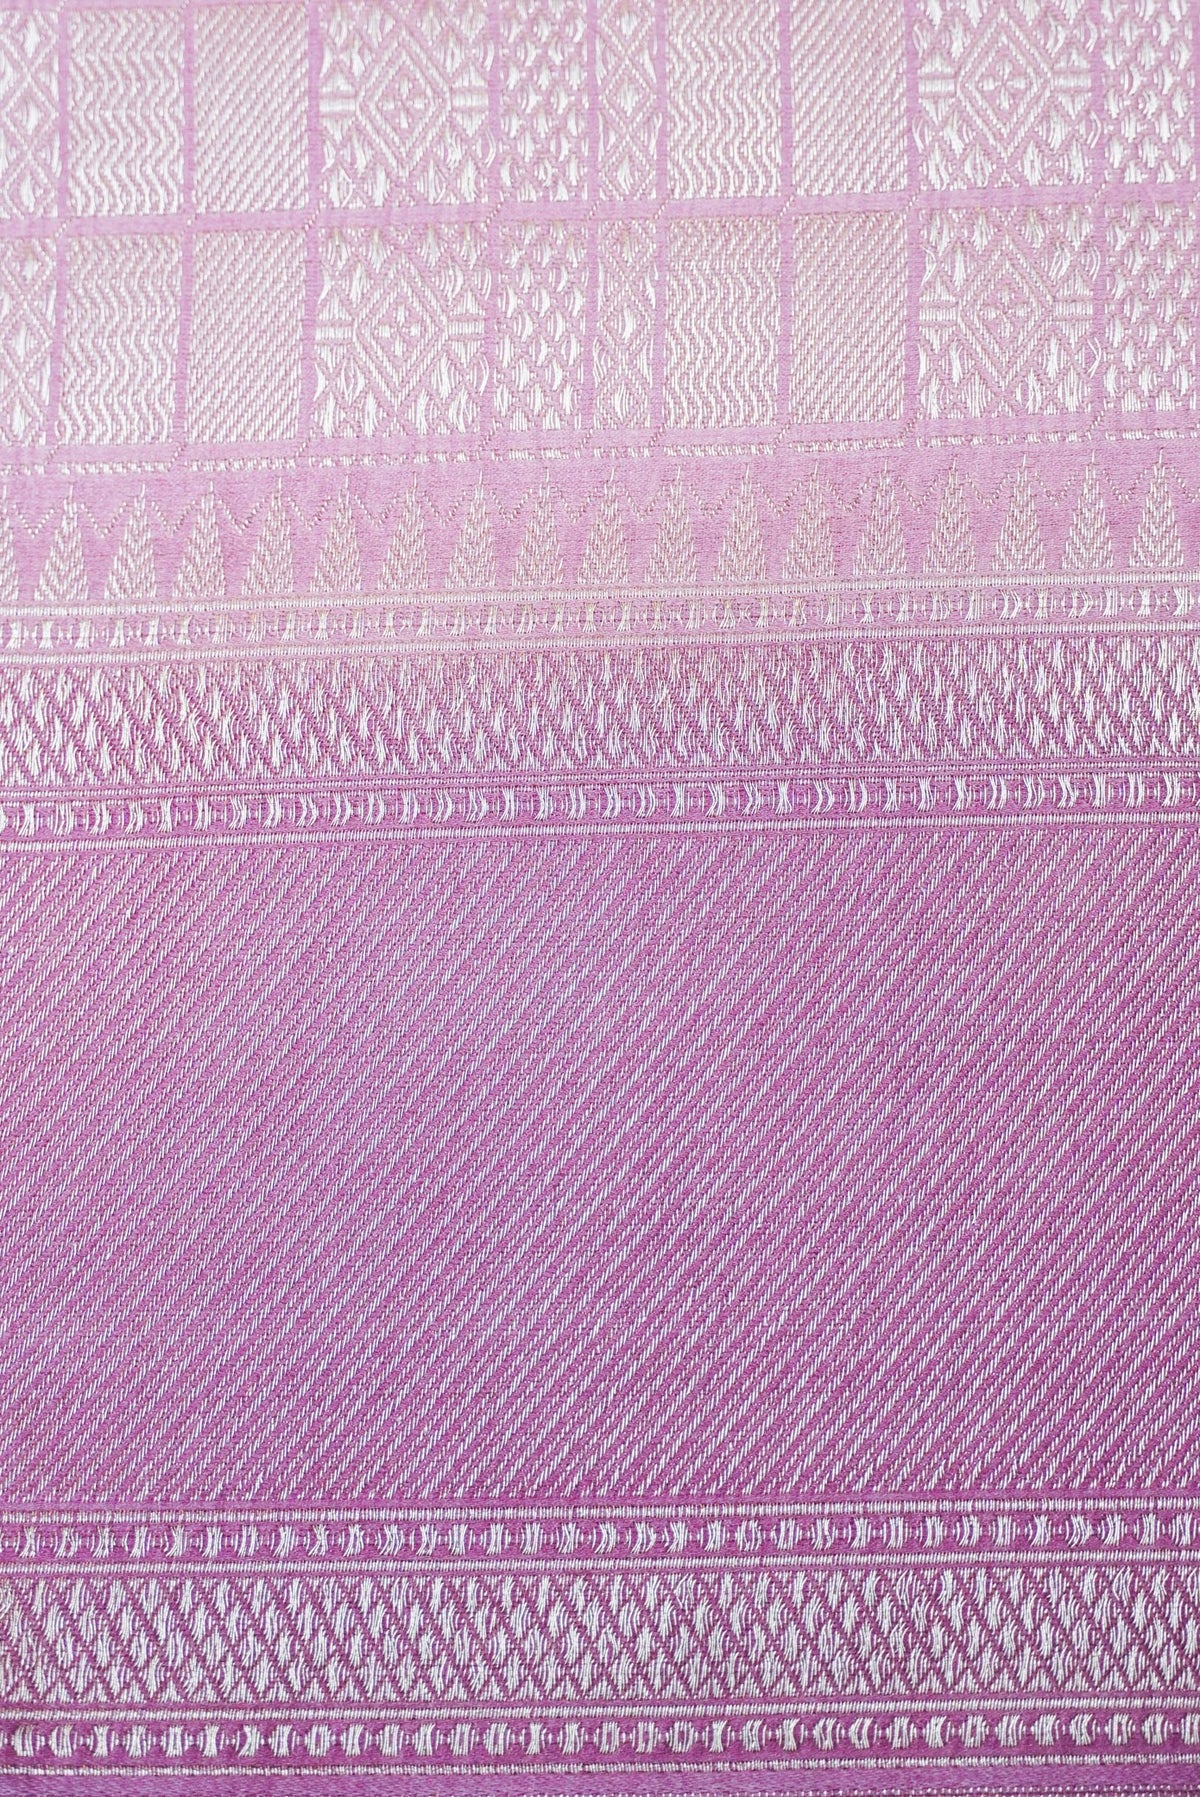 Handwoven Multi Color Banarasi Katan Soft Silk Saree